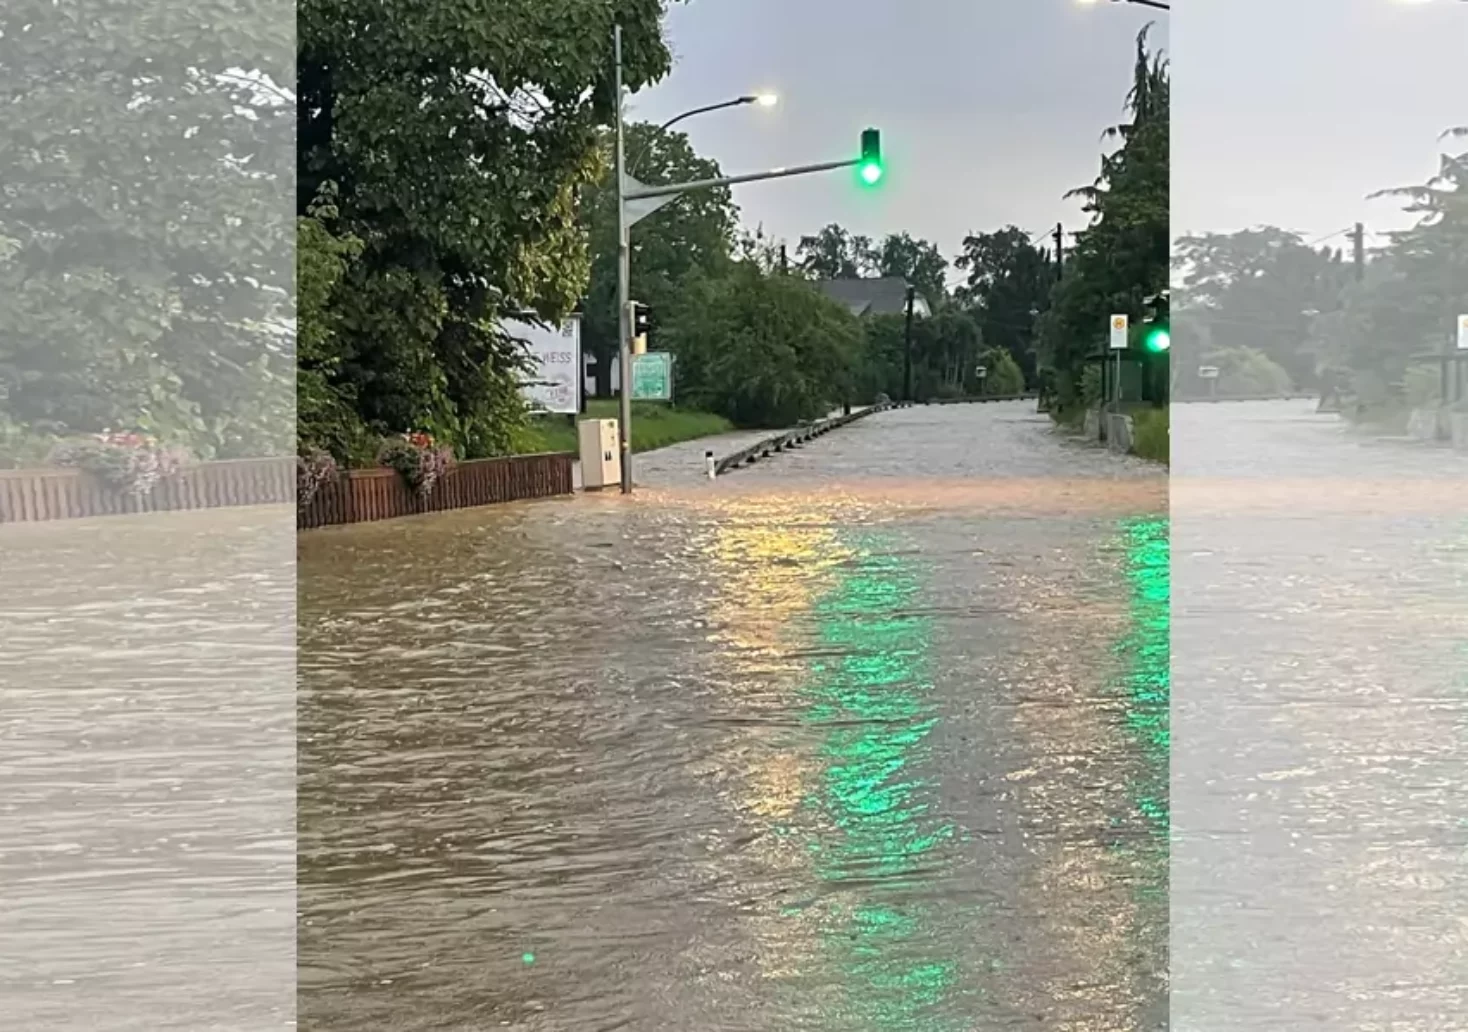 Bild auf 5min,at zeigt eine Überschwemmte Straße.